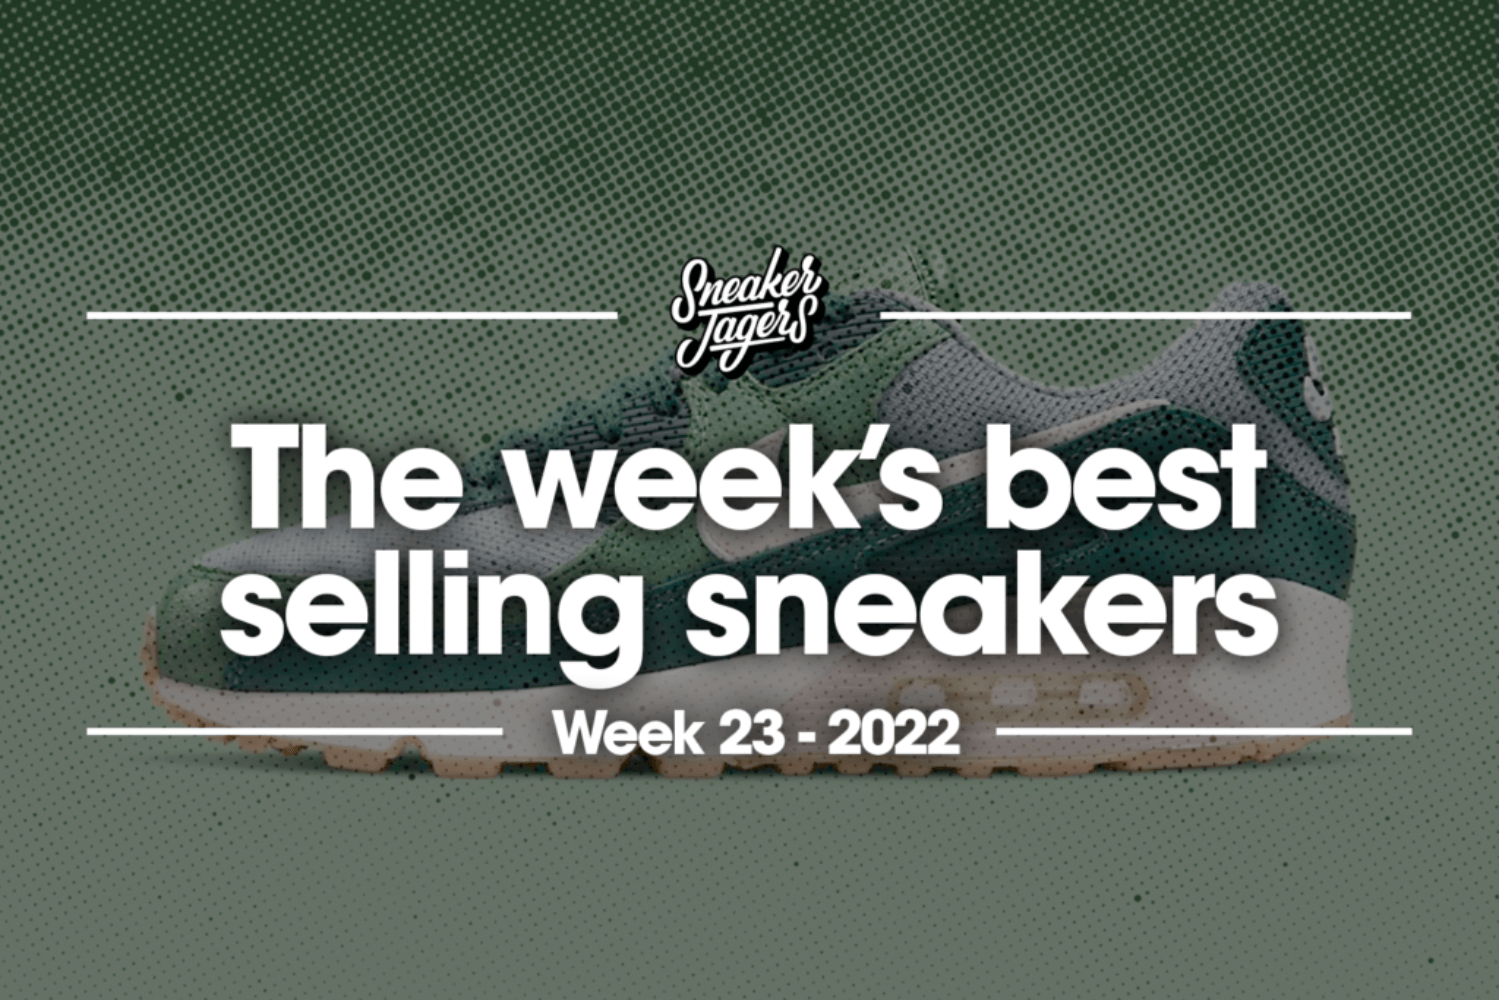 The 5 best-selling sneakers of week 23